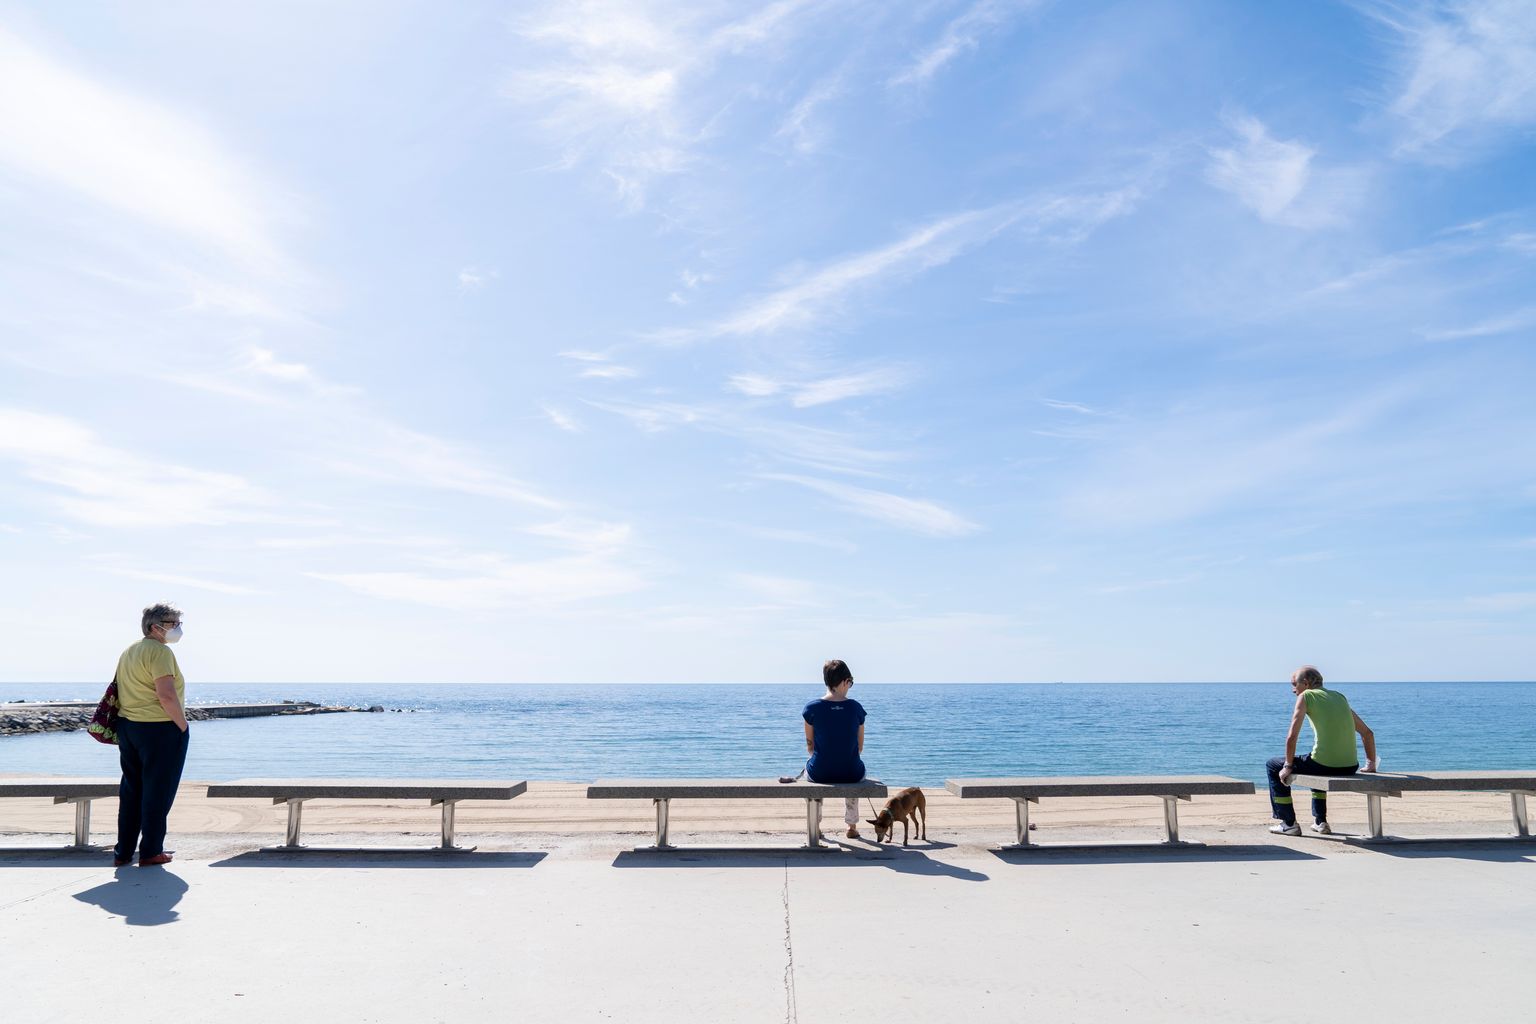 Persones assegudes als bancs del passeig Marítim del Bogatell contemplant el mar i guardant la distància de seguretat entre elles